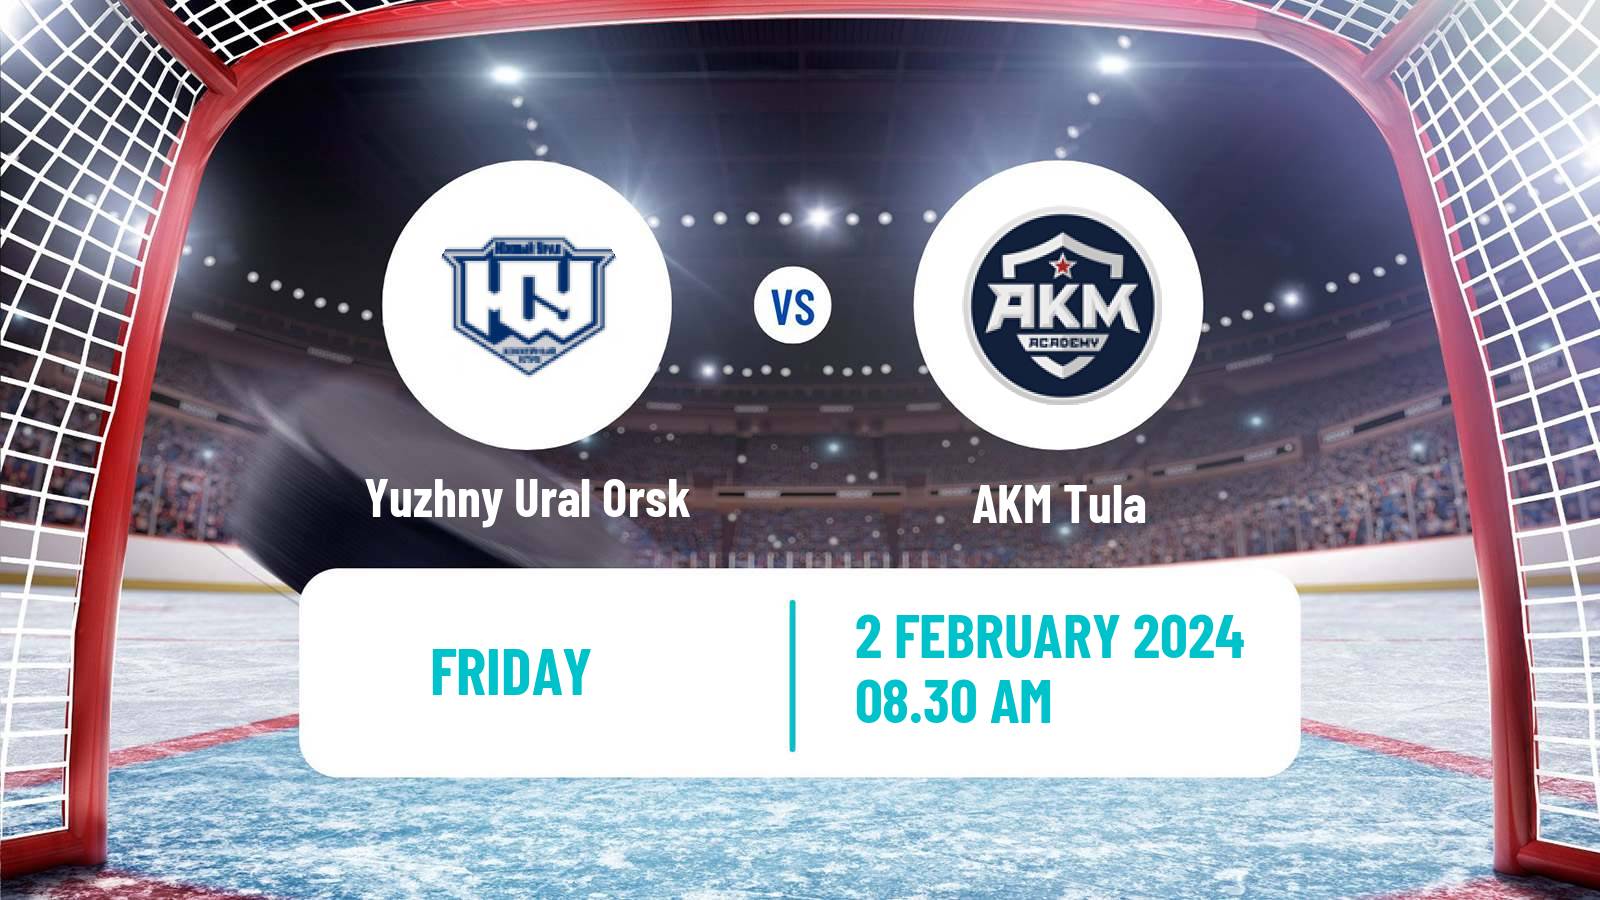 Hockey VHL Yuzhny Ural Orsk - AKM